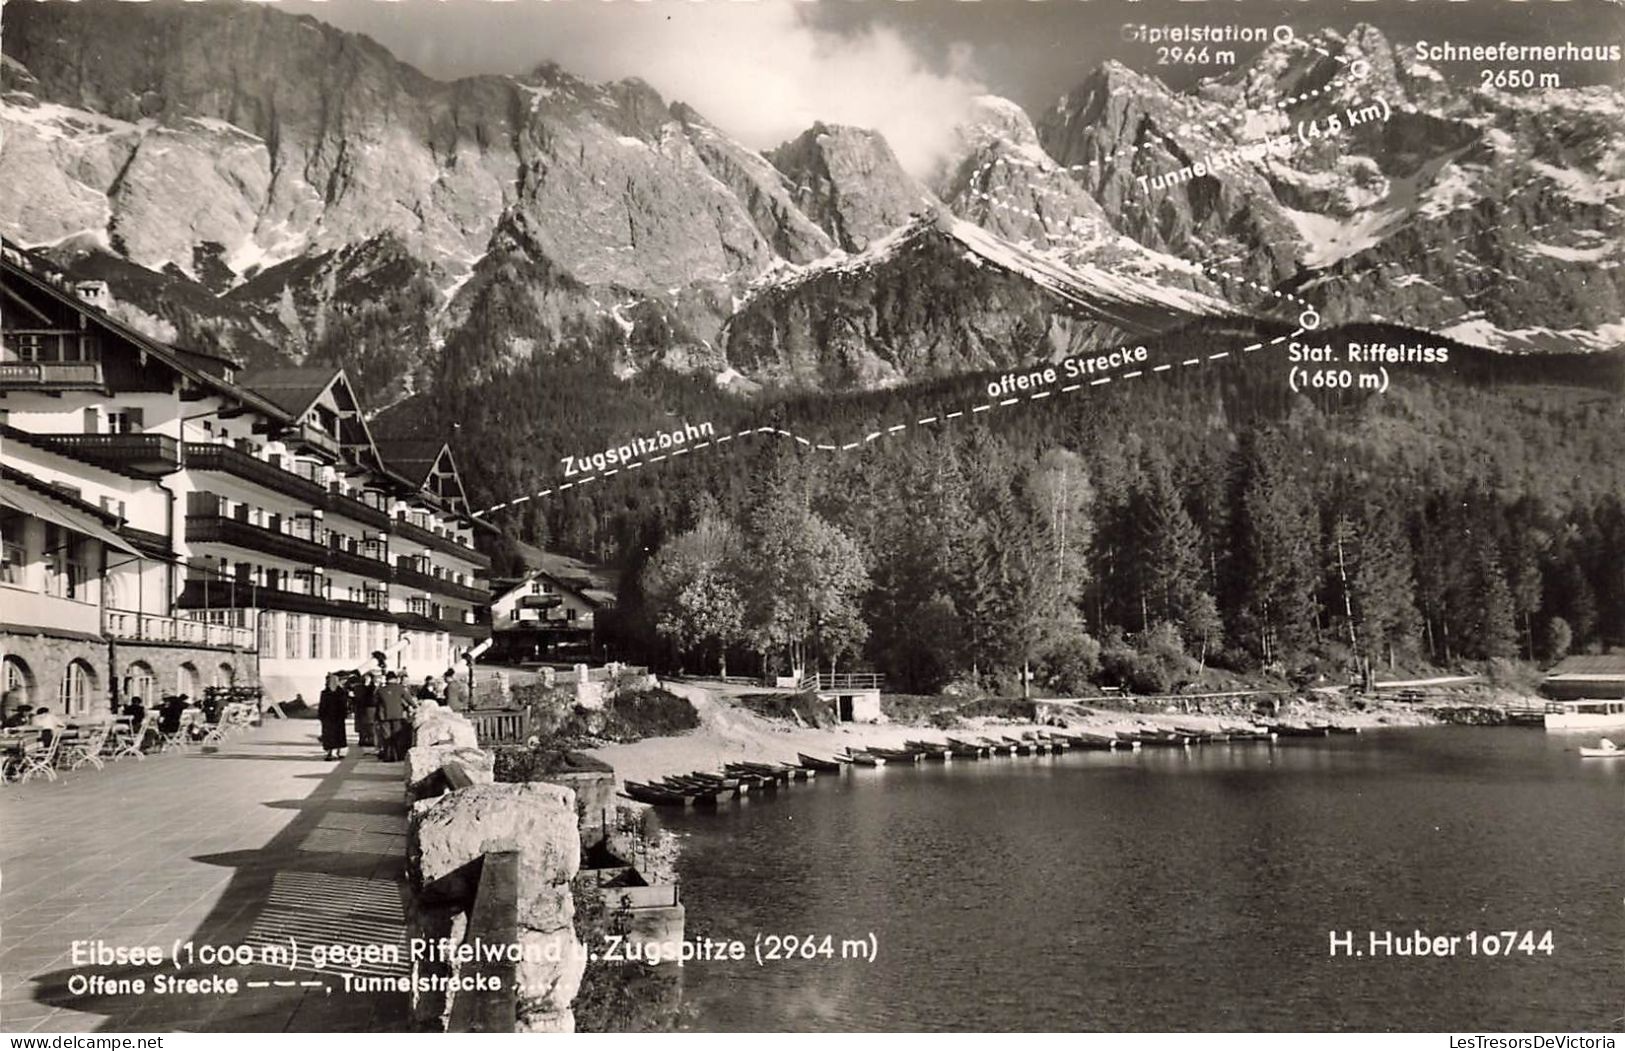 ALLEMAGNE - Eibsee (1000 M) - Gegen Riffelwand U Zugspitze (2964 M) - Offene Strecke - Carte Postale Ancienne - Garmisch-Partenkirchen